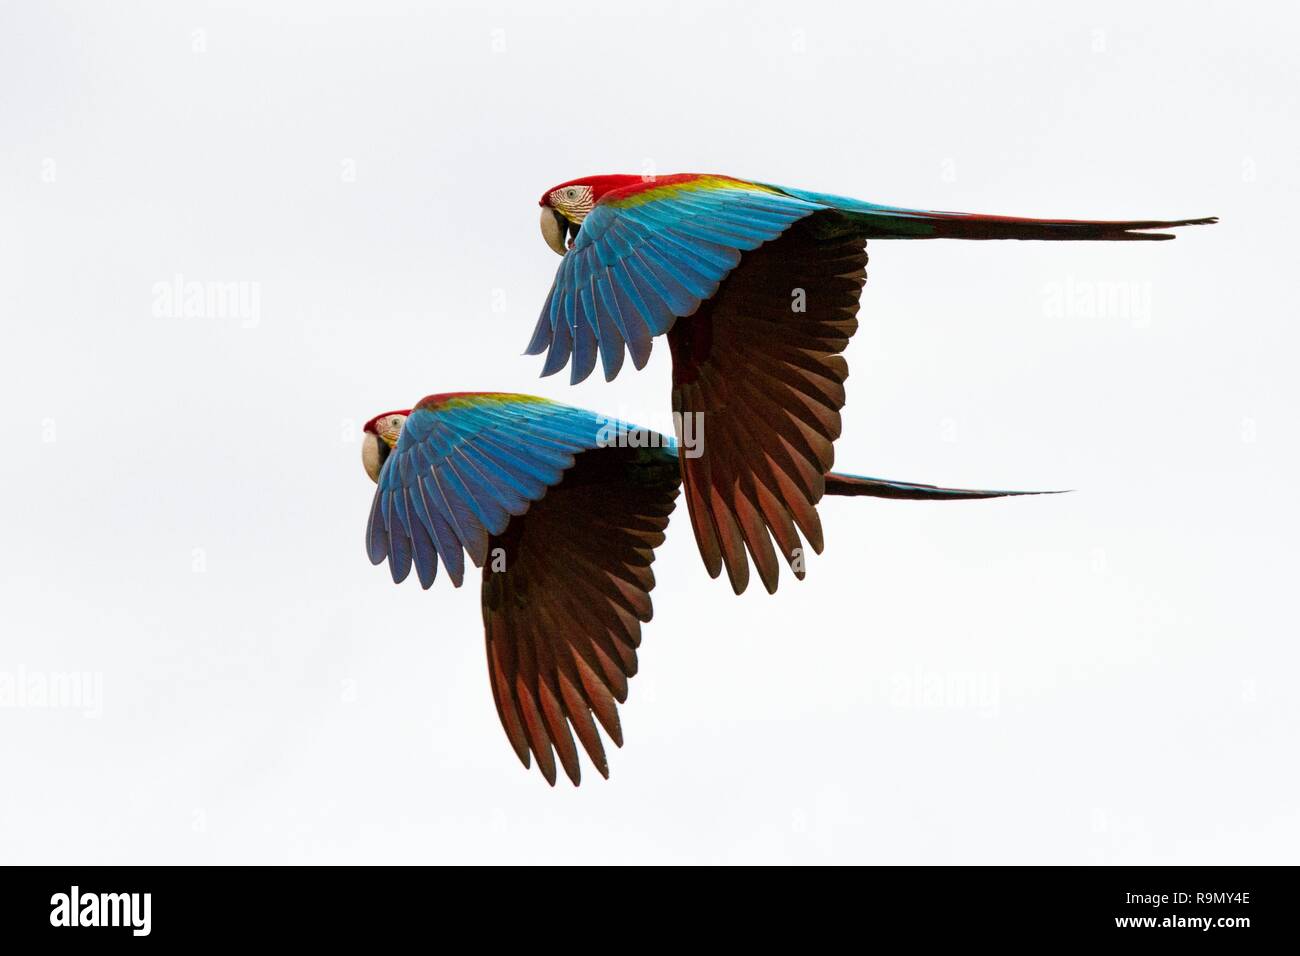 Nicht rot Papageien im Flug. Ara fliegen, weißer Hintergrund, isolierte  Vögel, roten und grünen Ara im tropischen Wald, Brasilien, Wildlife Szene  aus tropischen Stockfotografie - Alamy